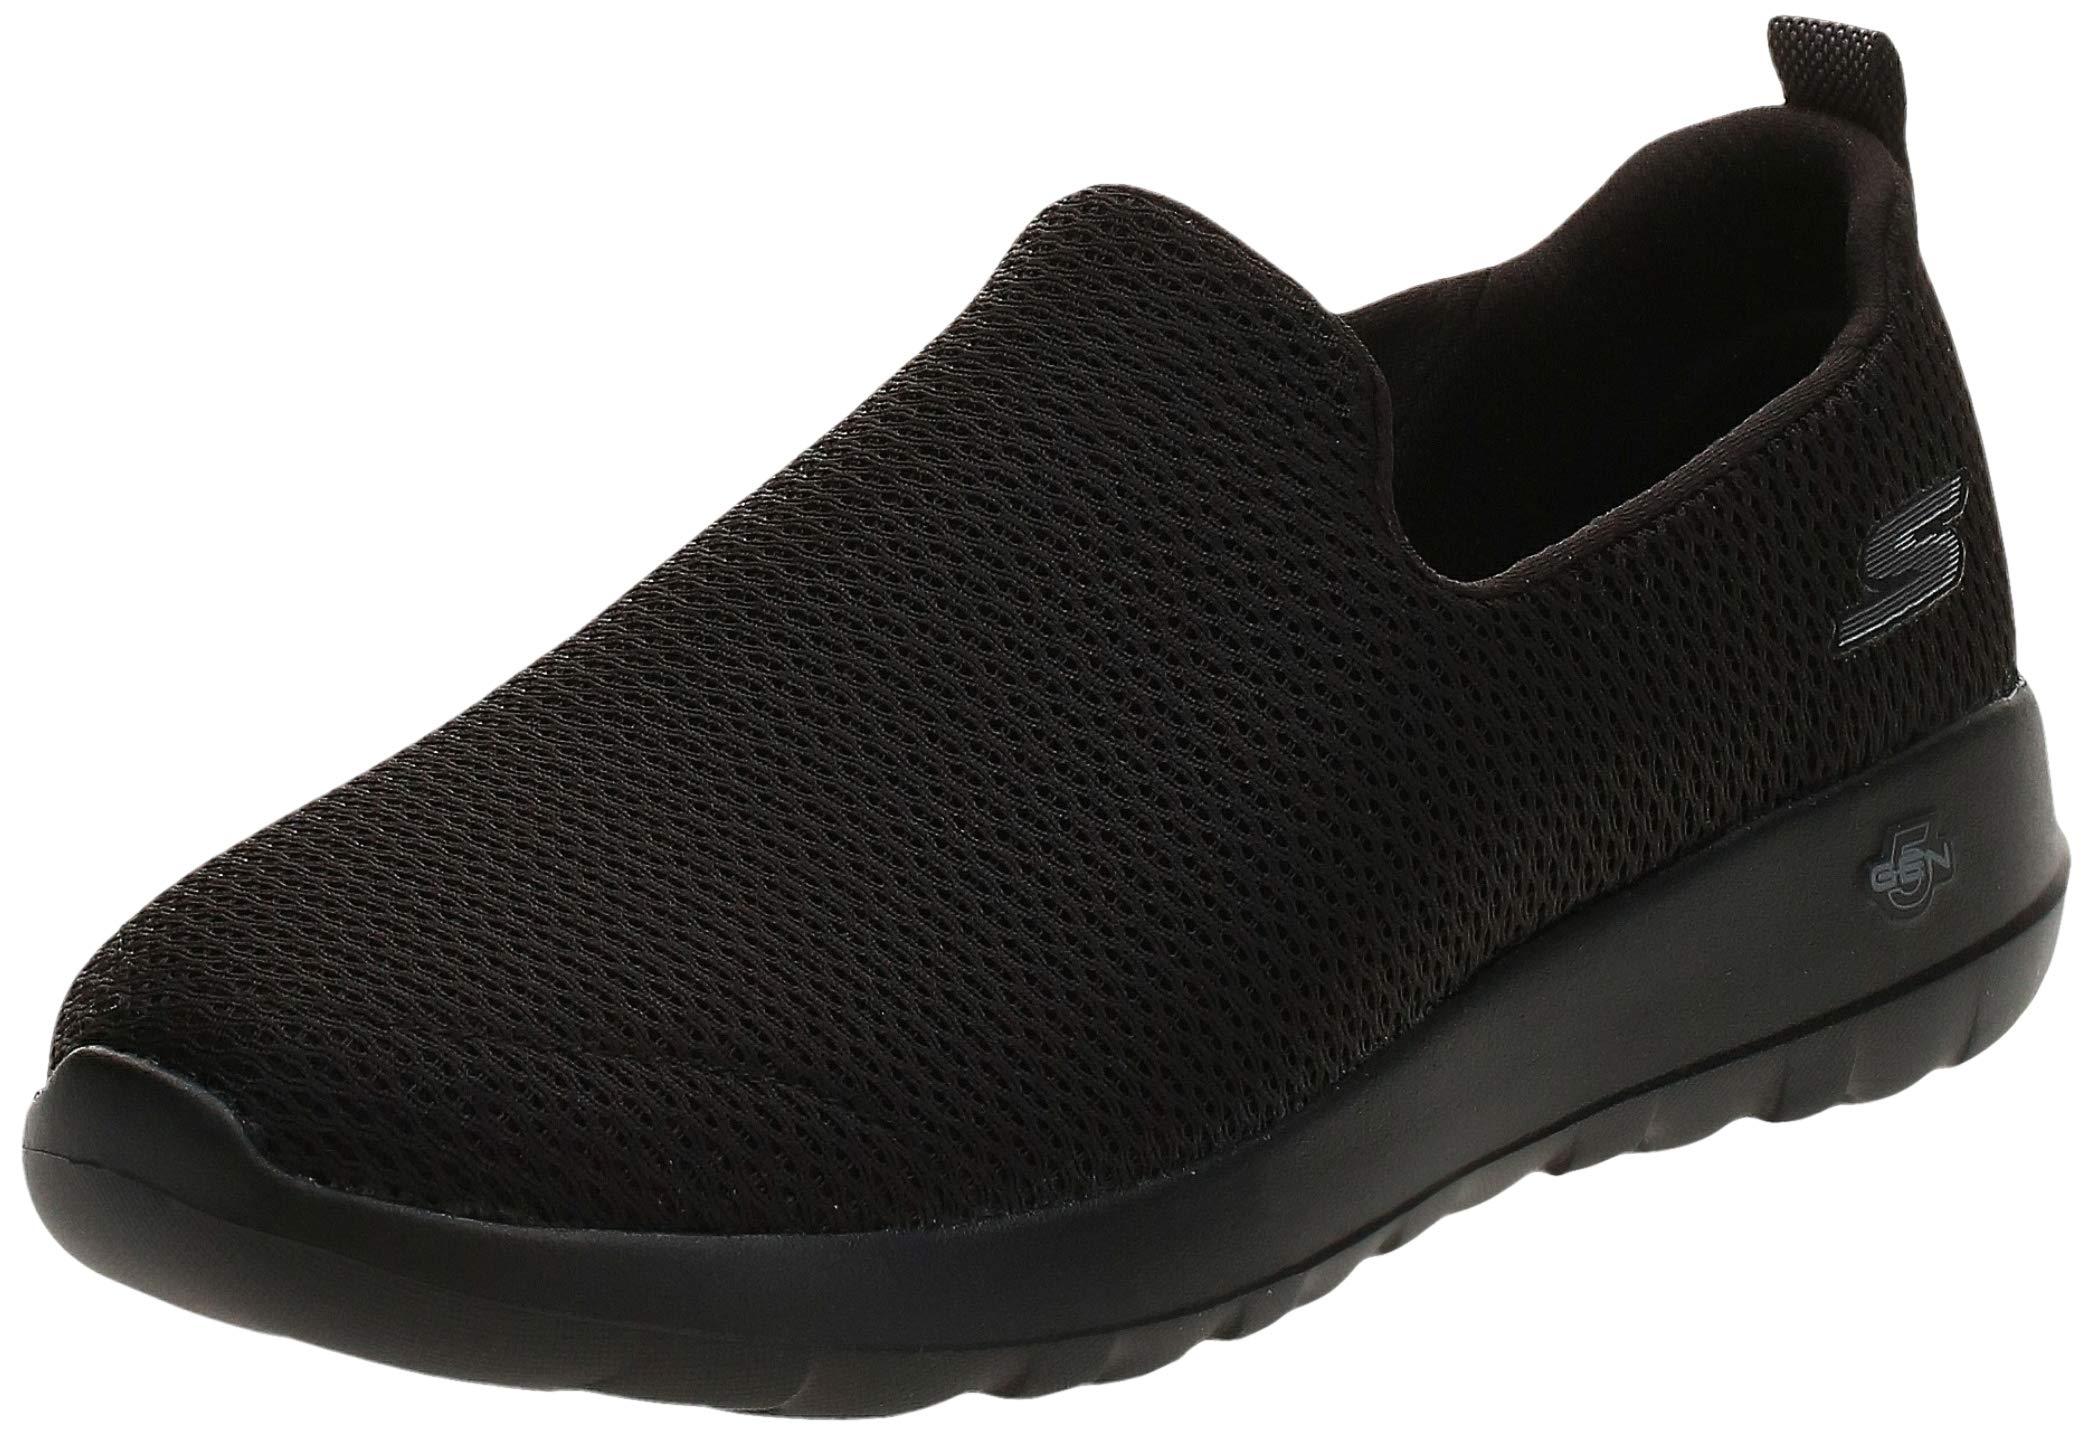 Skechers Go Max-athletic Air Mesh Slip On Walking Shoe Sneaker in Black ...